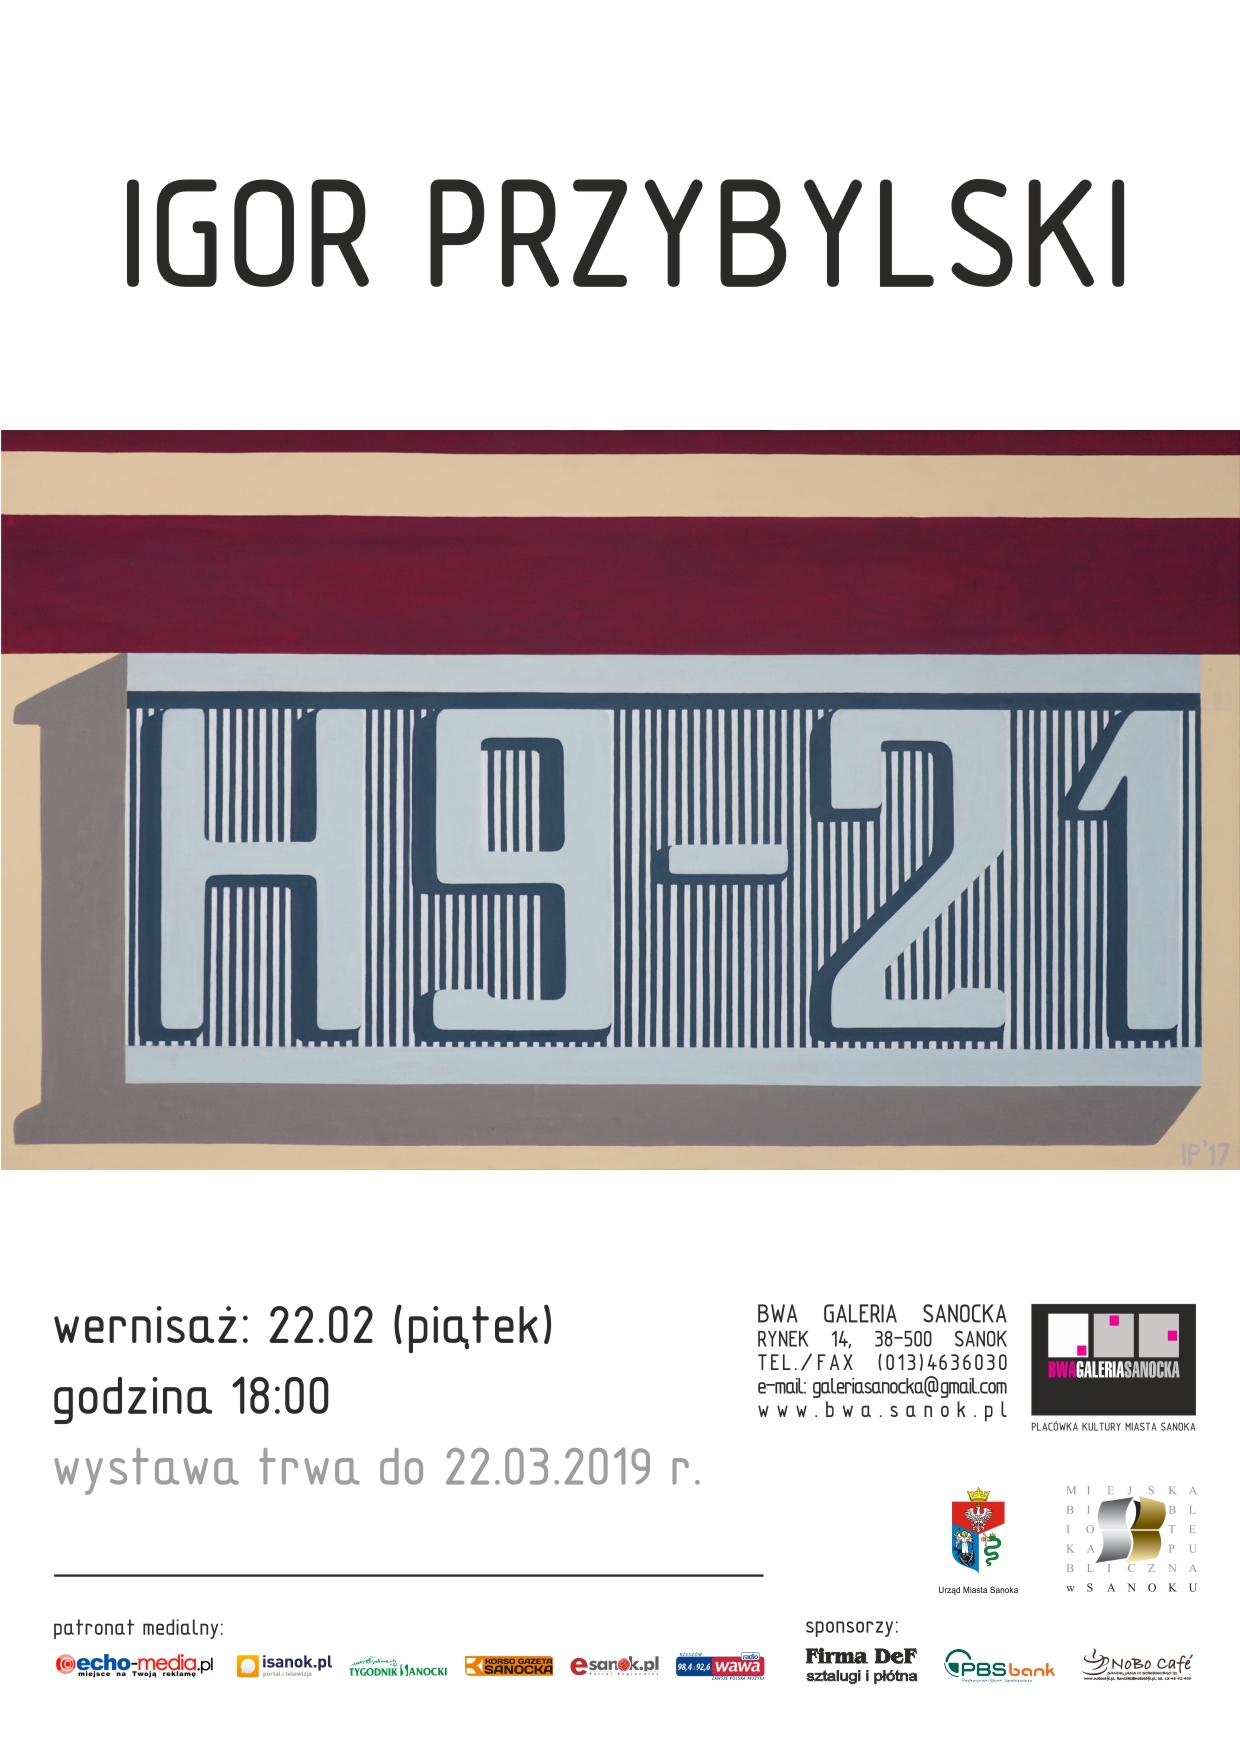 Wystawa: Igor Przybylski, H9-21 – Zaproszenie (źródło: materiały prasowe organizatora)